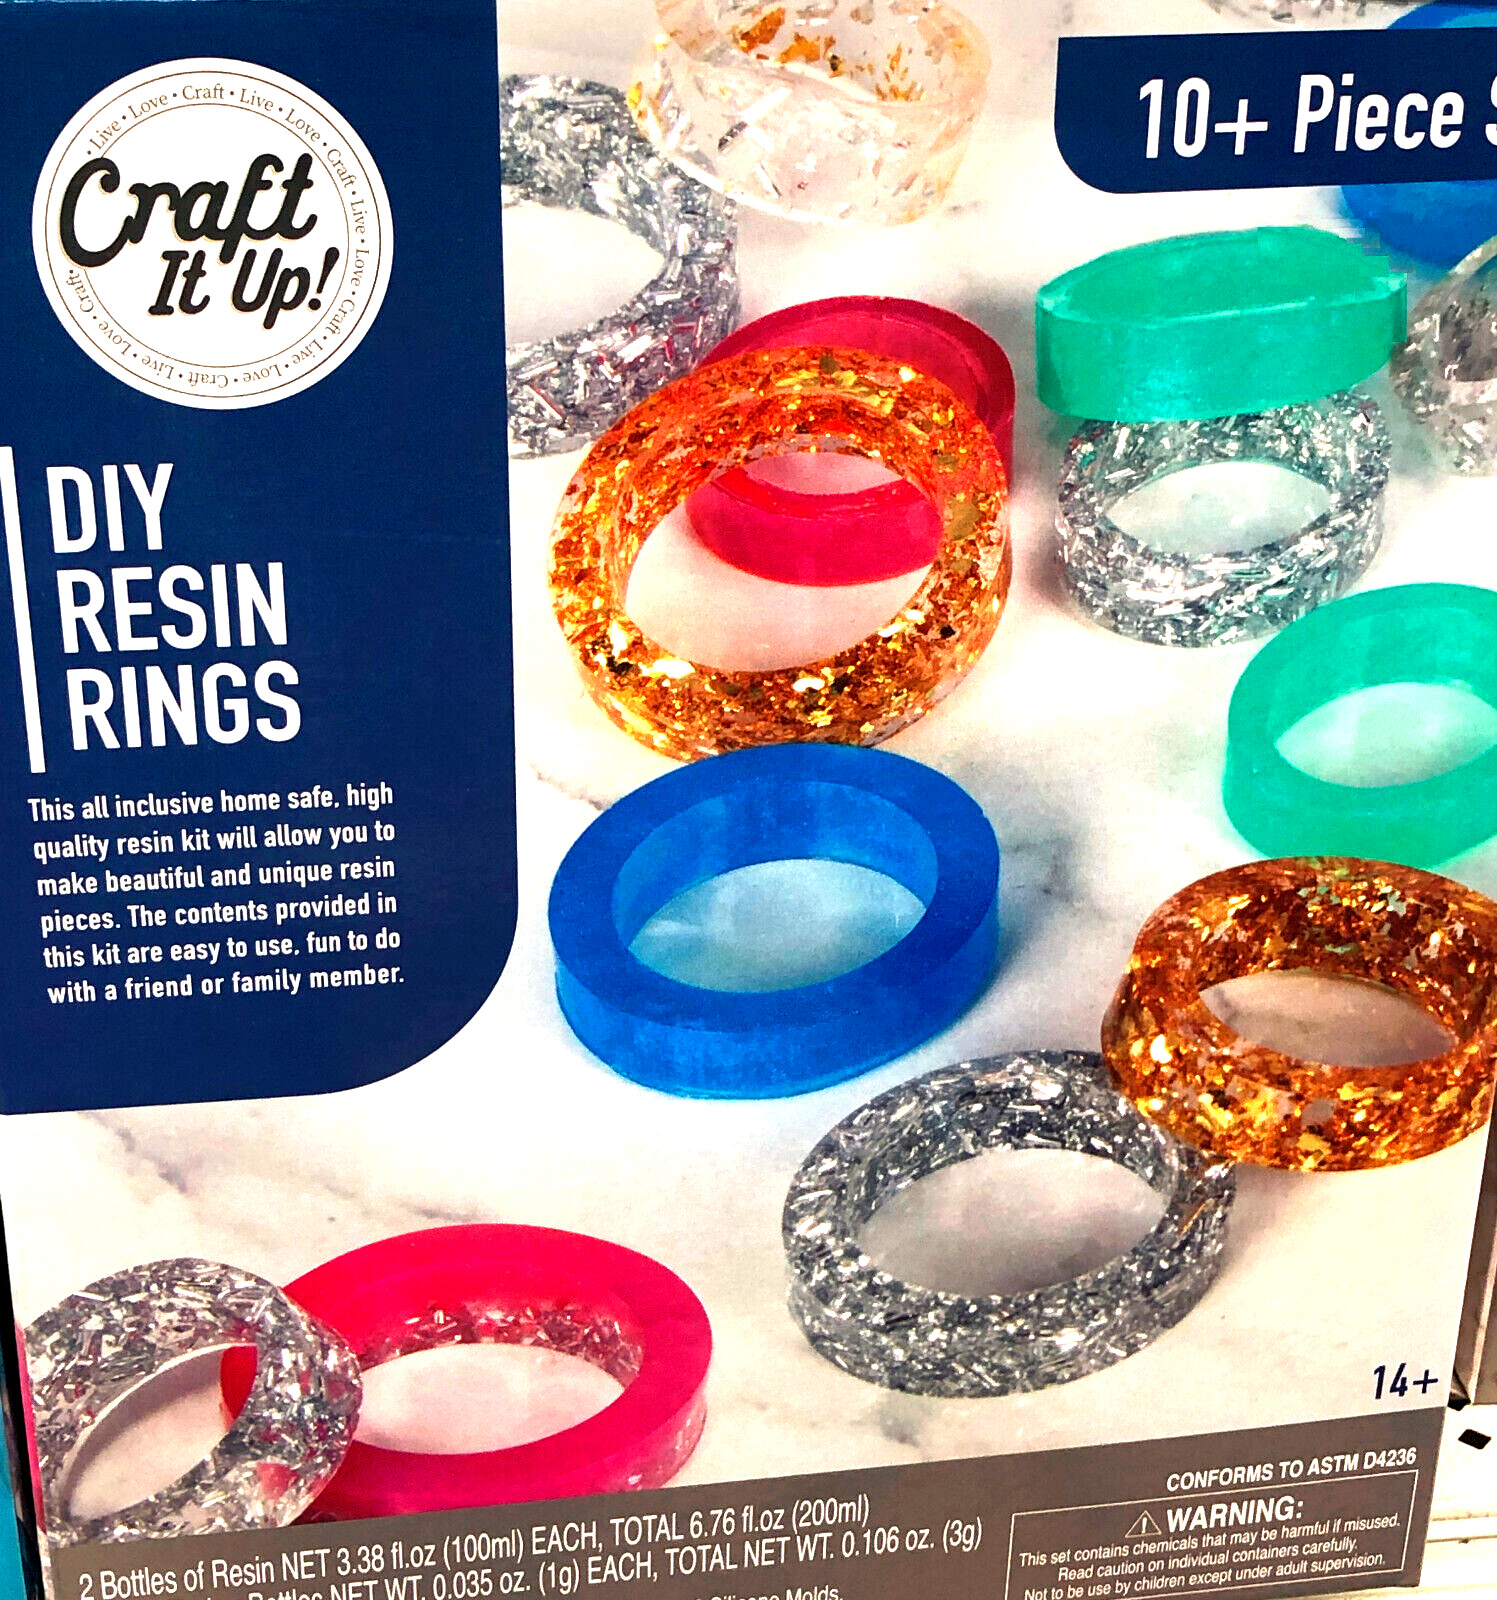 Craft It Up! Resin Ring Kit Diy Resin Rings 10+ Piece Beginner's Kit